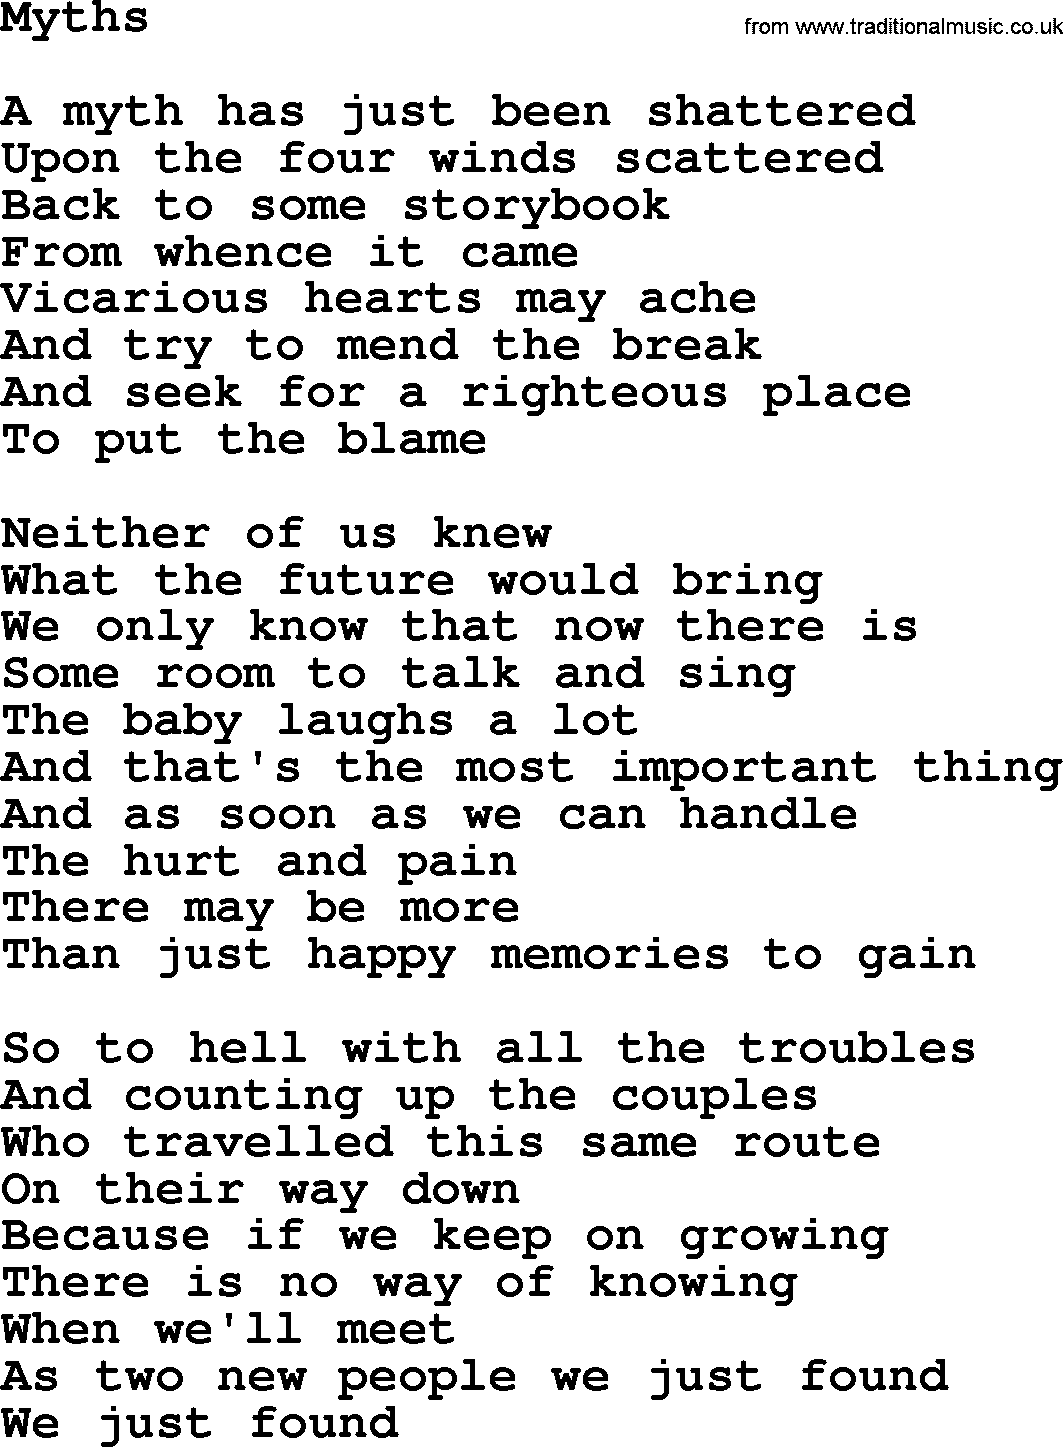 Joan Baez song Myths, lyrics